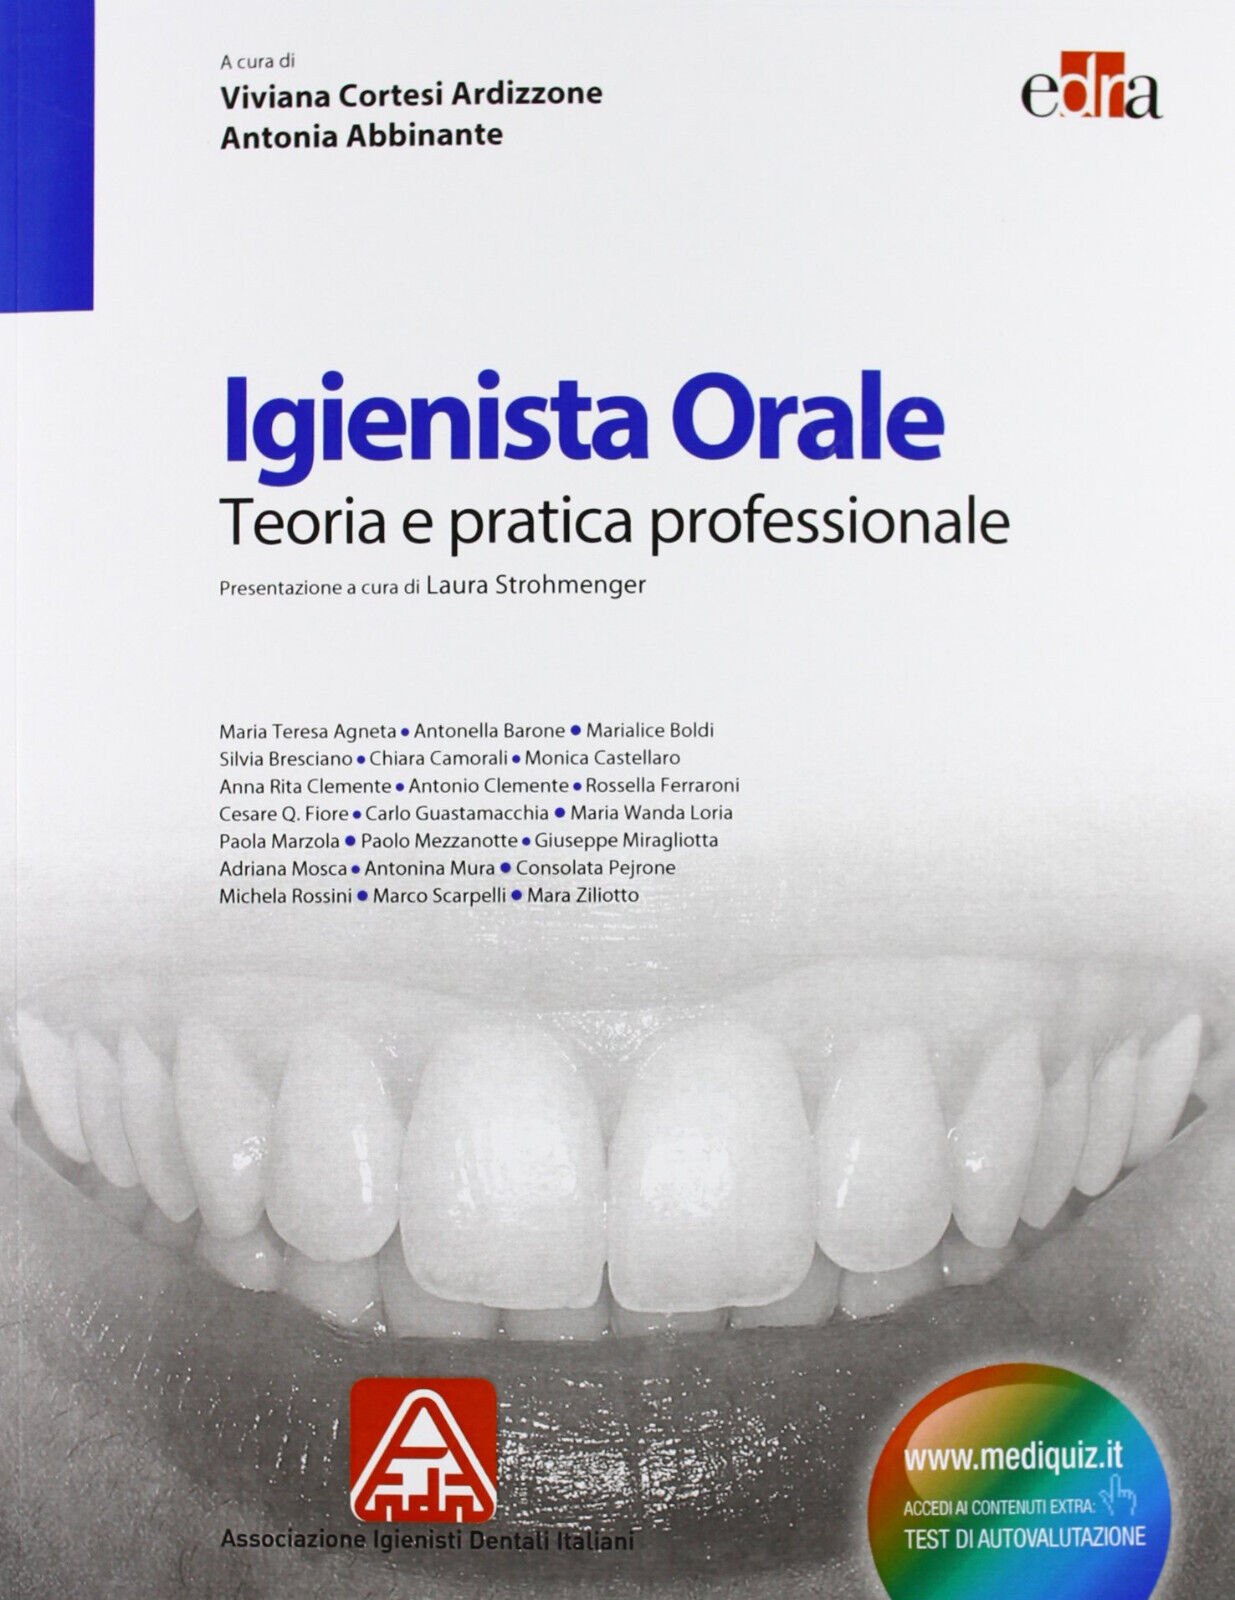 Igienista orale. Teoria e pratica professionale - V. Cortesi Ardizzone - 2013